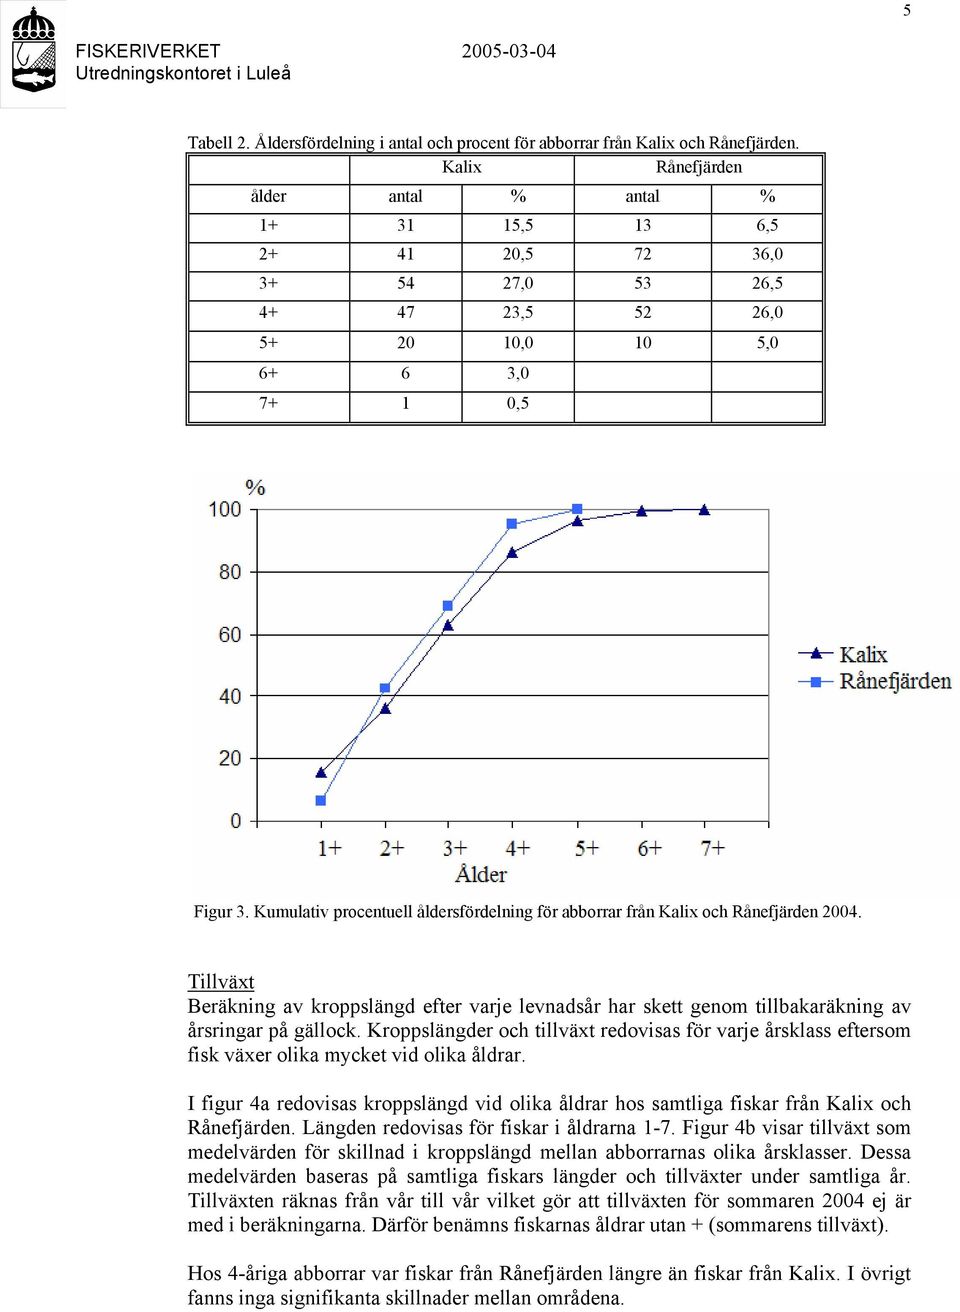 Kumulativ procentuell åldersfördelning för abborrar från Kalix och Rånefjärden 2004. Tillväxt Beräkning av kroppslängd efter varje levnadsår har skett genom tillbakaräkning av årsringar på gällock.